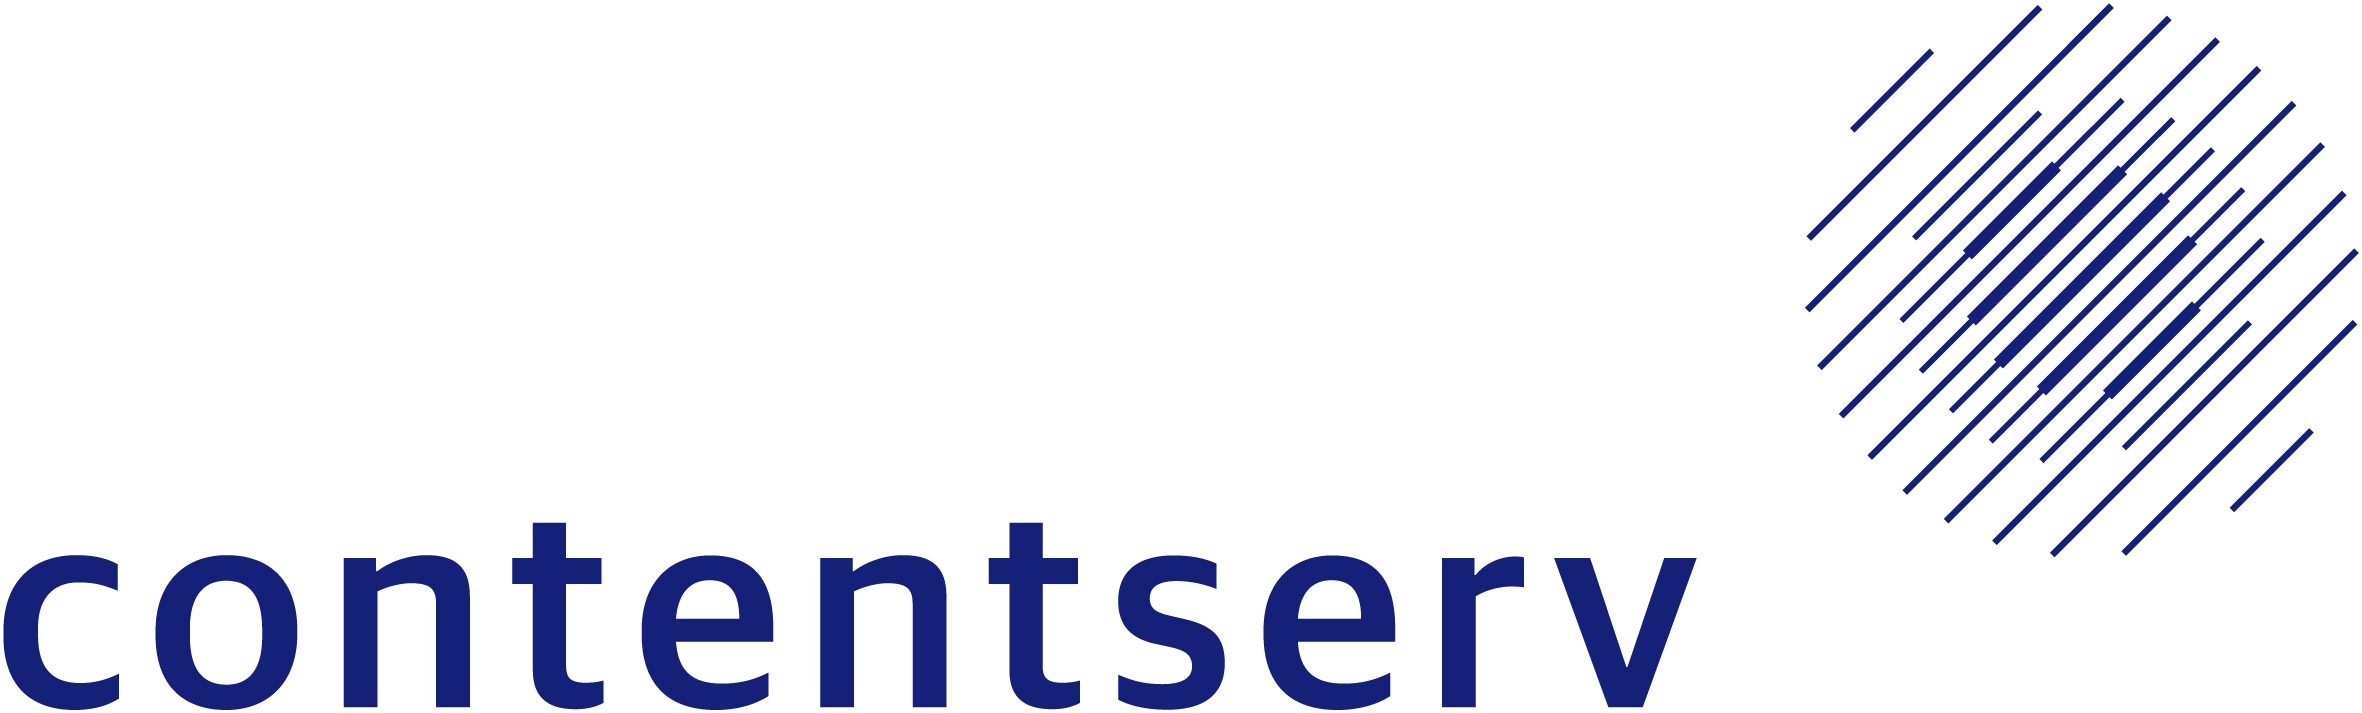 Contentserv_Group Logo